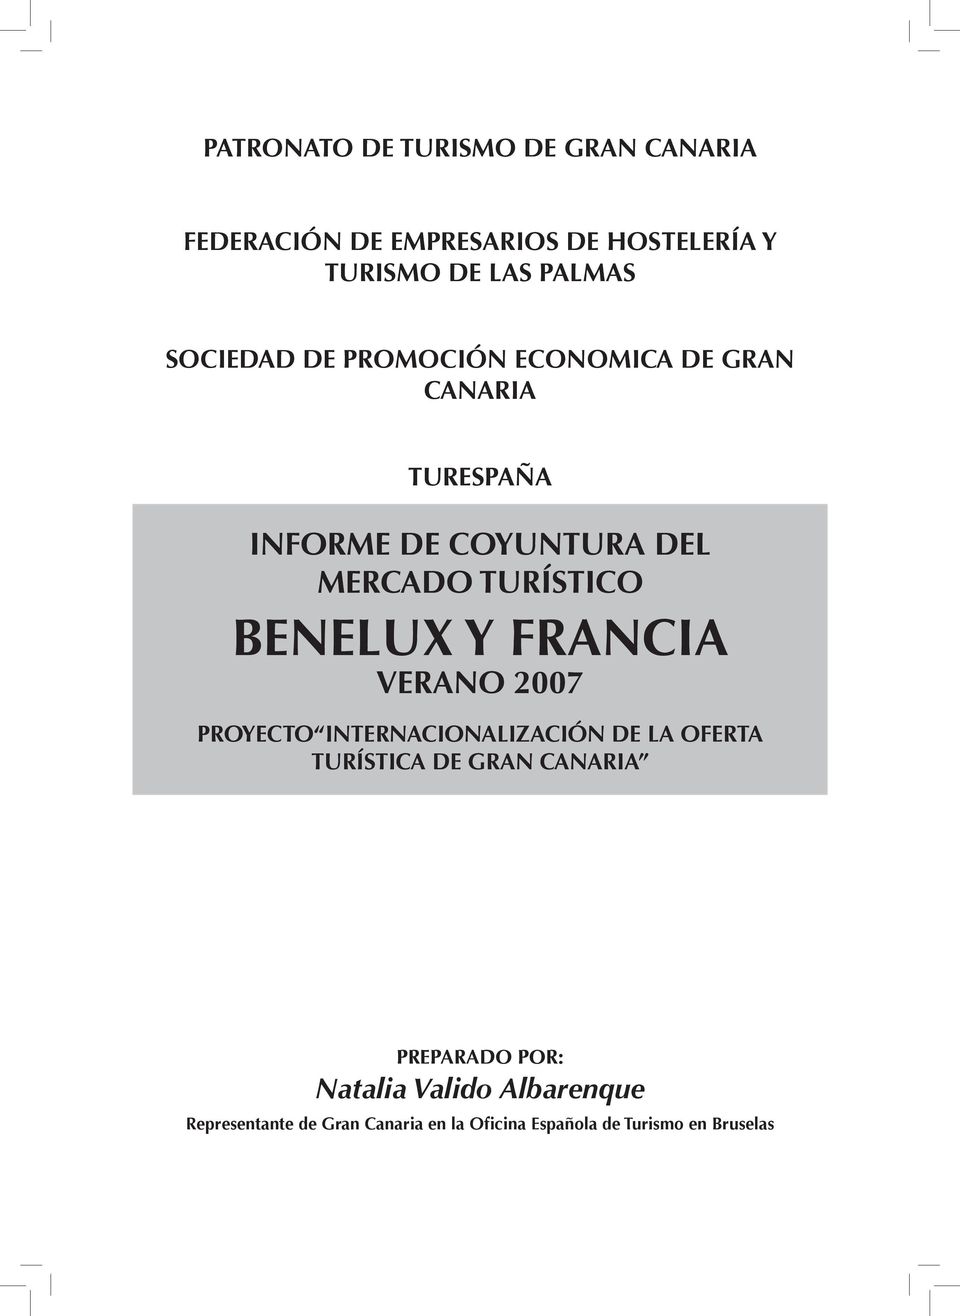 BENELUX Y FRANCIA VERANO 2007 PROYECTO INTERNACIONALIZACIÓN DE LA OFERTA TURÍSTICA DE GRAN CANARIA